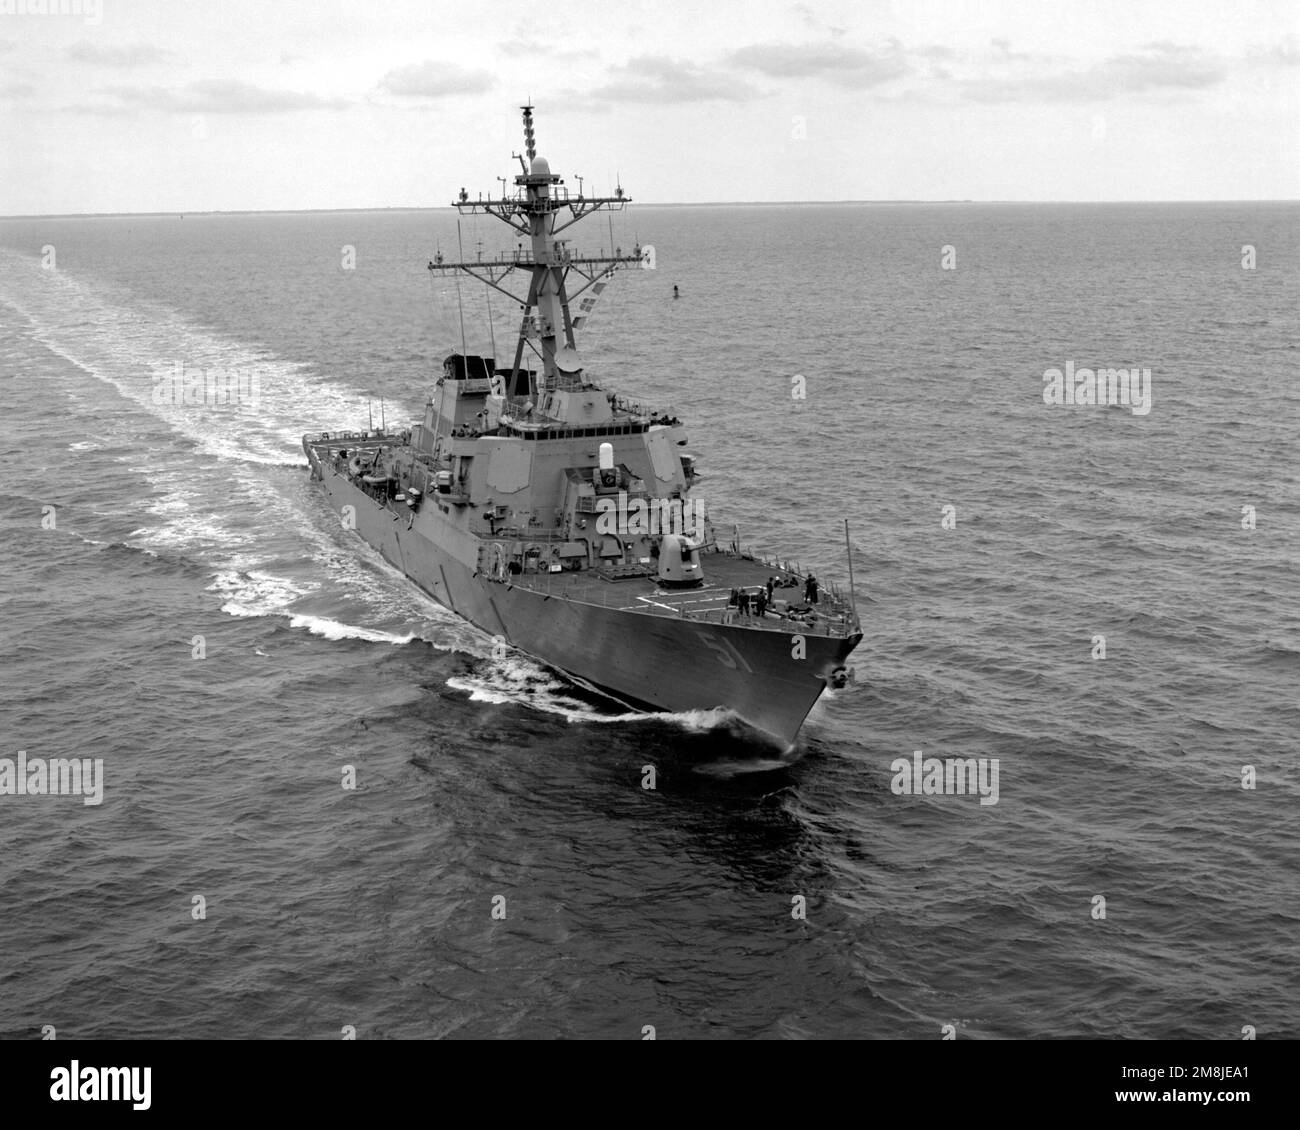 Una vista de arco a estribor del destructor de misiles guiado USS ARLEIGH BURKE (DDG-51) en marcha frente a los Capos de Virginia. Base: USS Arleigh Burke País: Océano Atlántico (AOC) Foto de stock